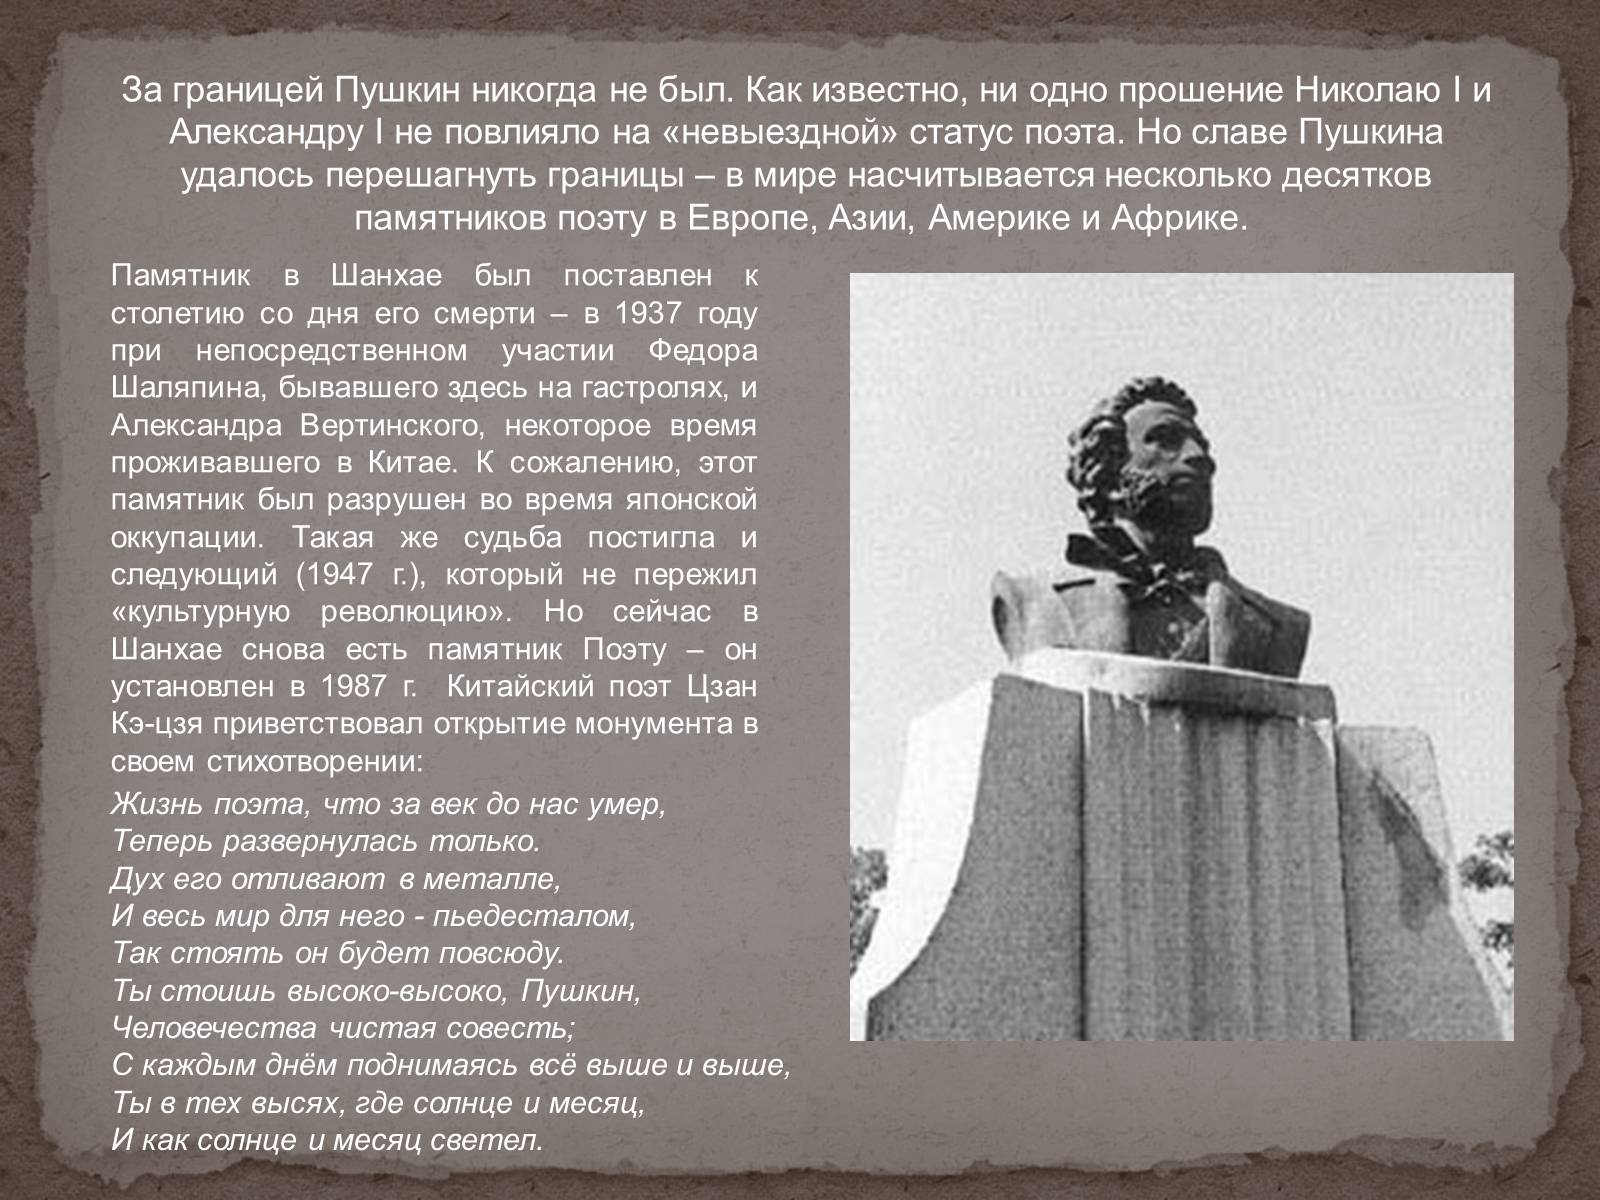 История создания памятника Пушкину бюста поэта в Париже